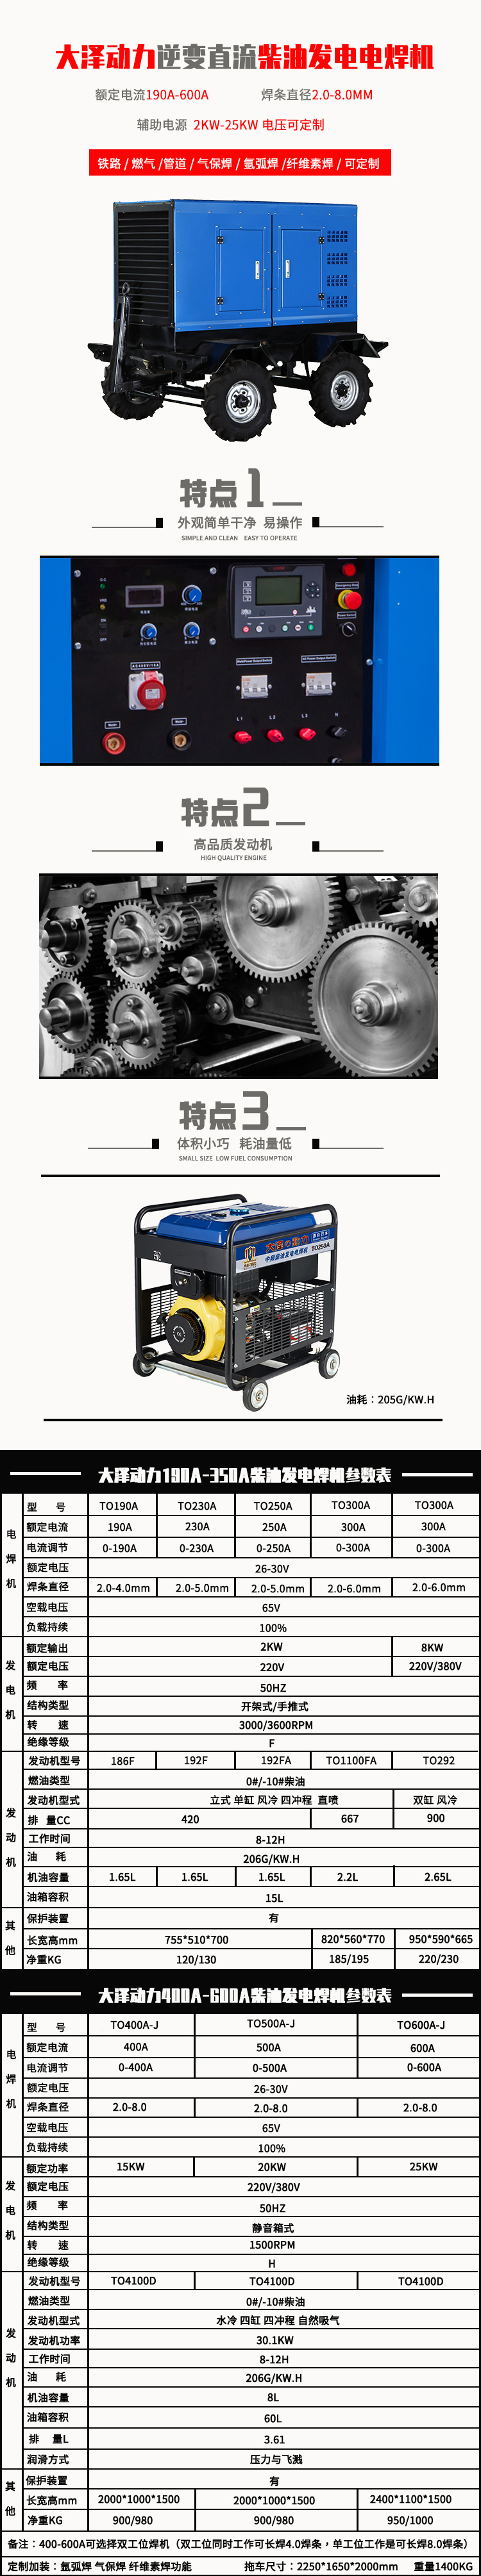 项目采购250A柴油发电电焊一体机大泽动力TO250A 250A柴油发电电焊一体机,柴油发电电焊机,大泽动力